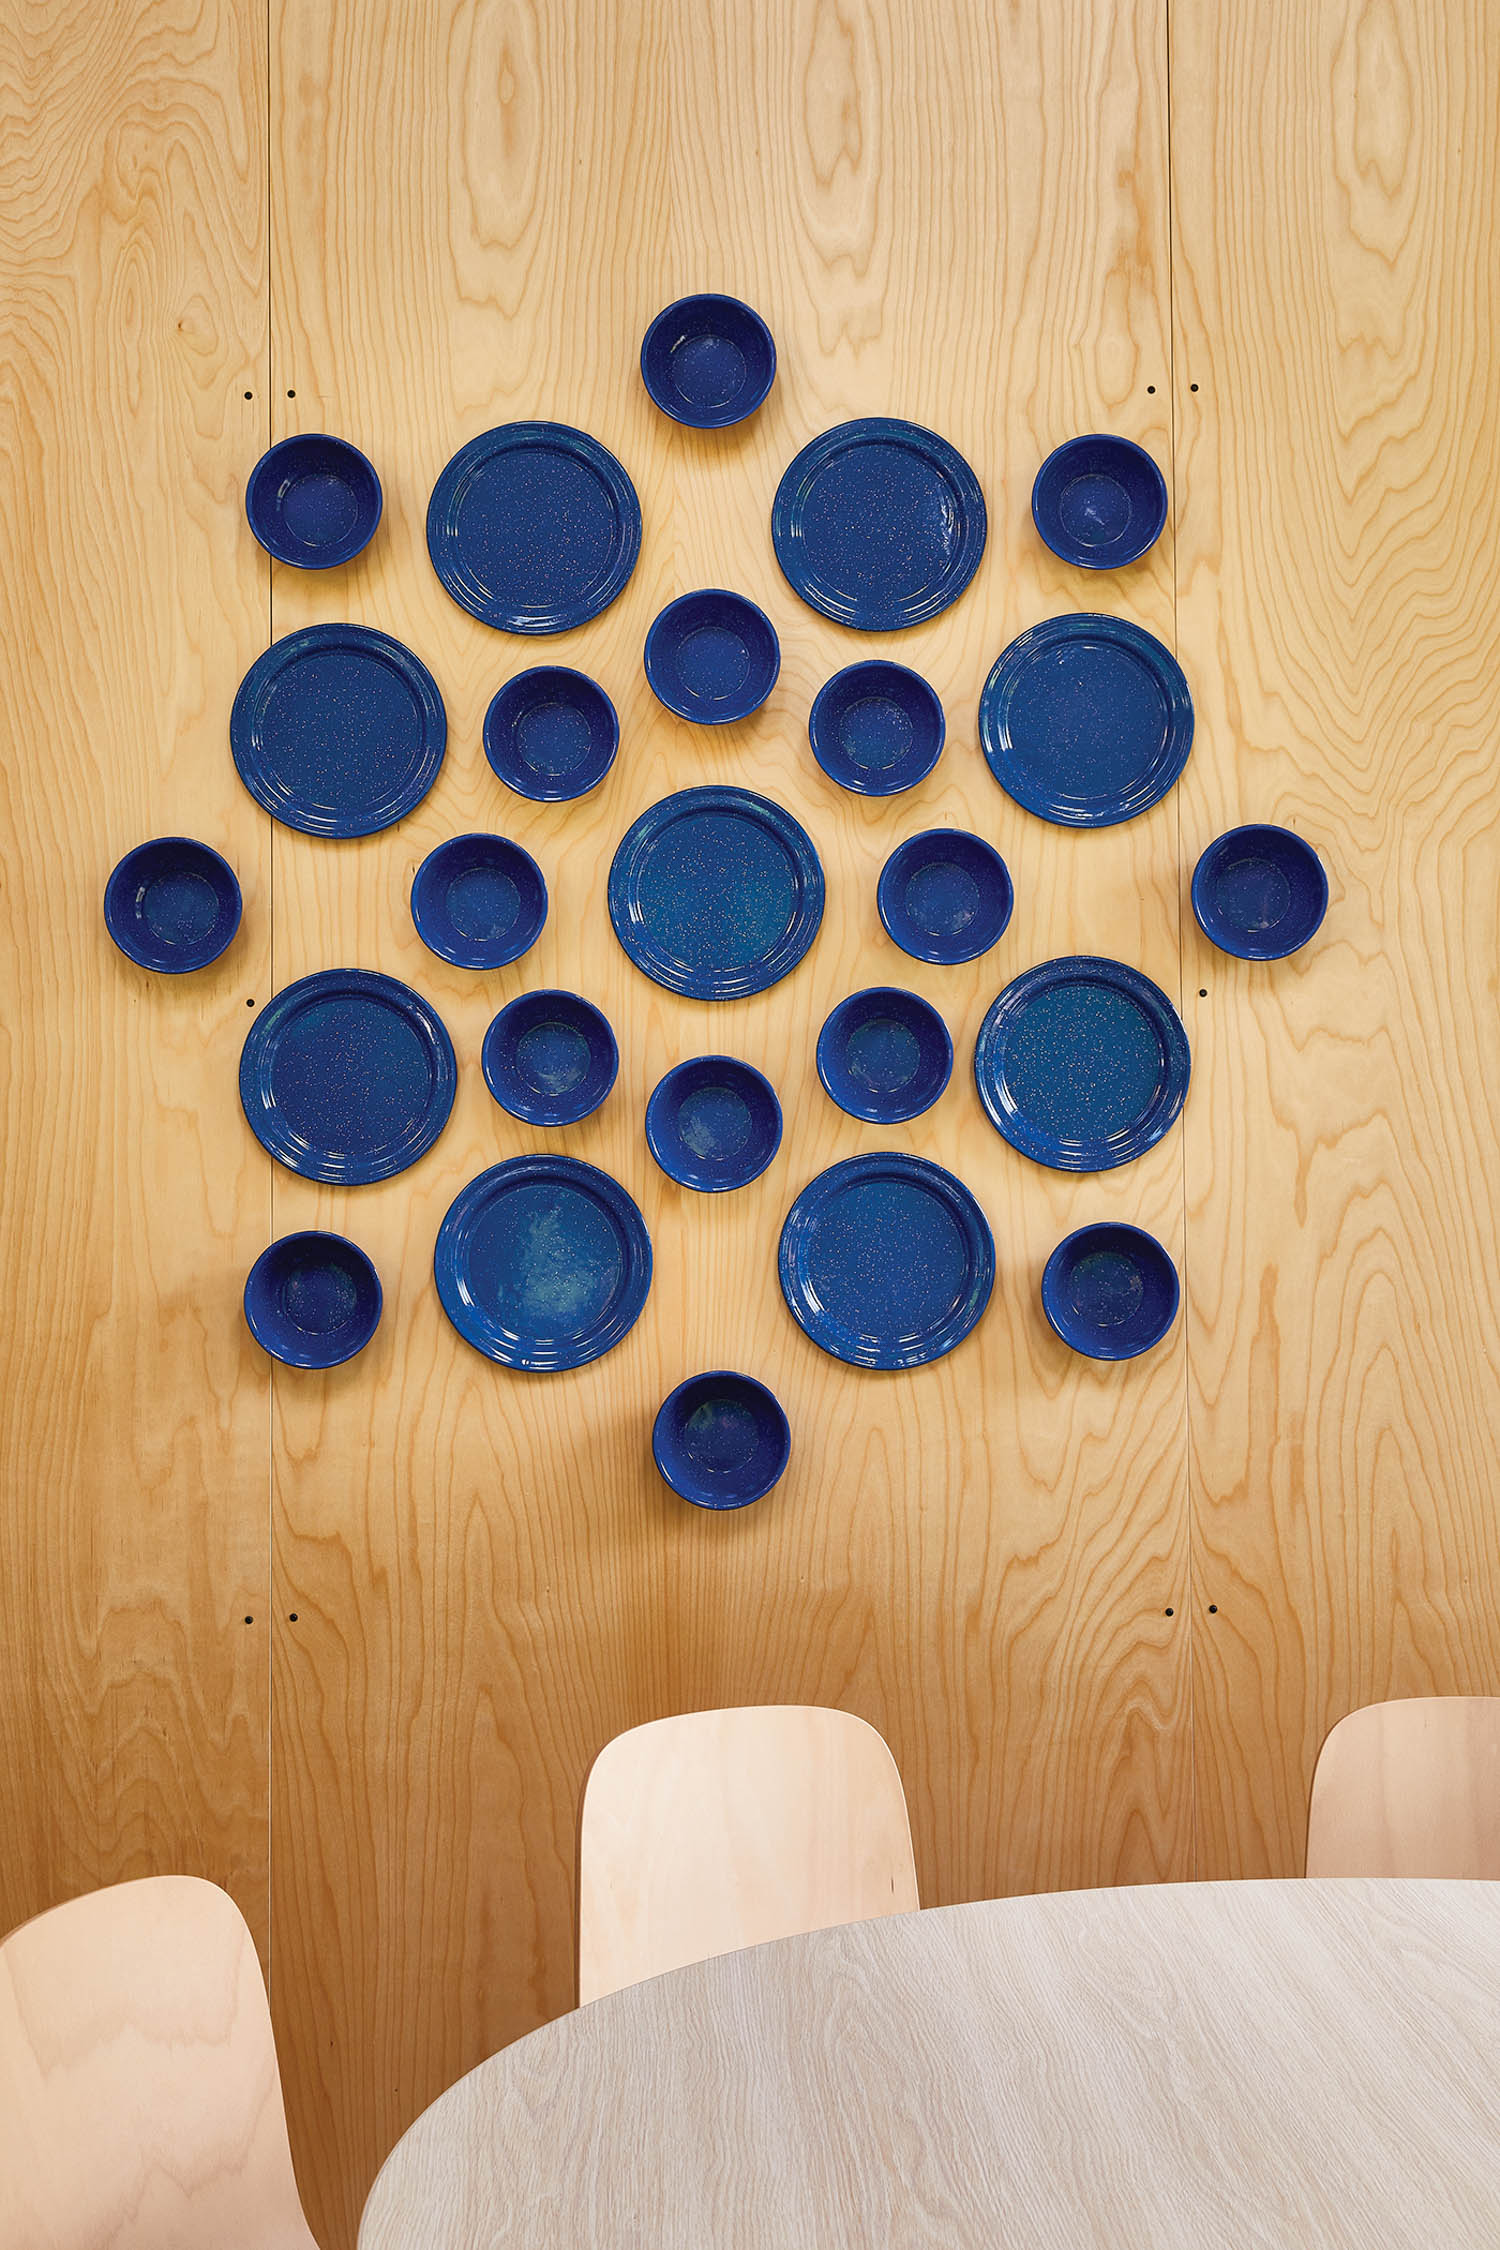 an installation made of cobalt camping-ware by Elizabeth Schnurstein